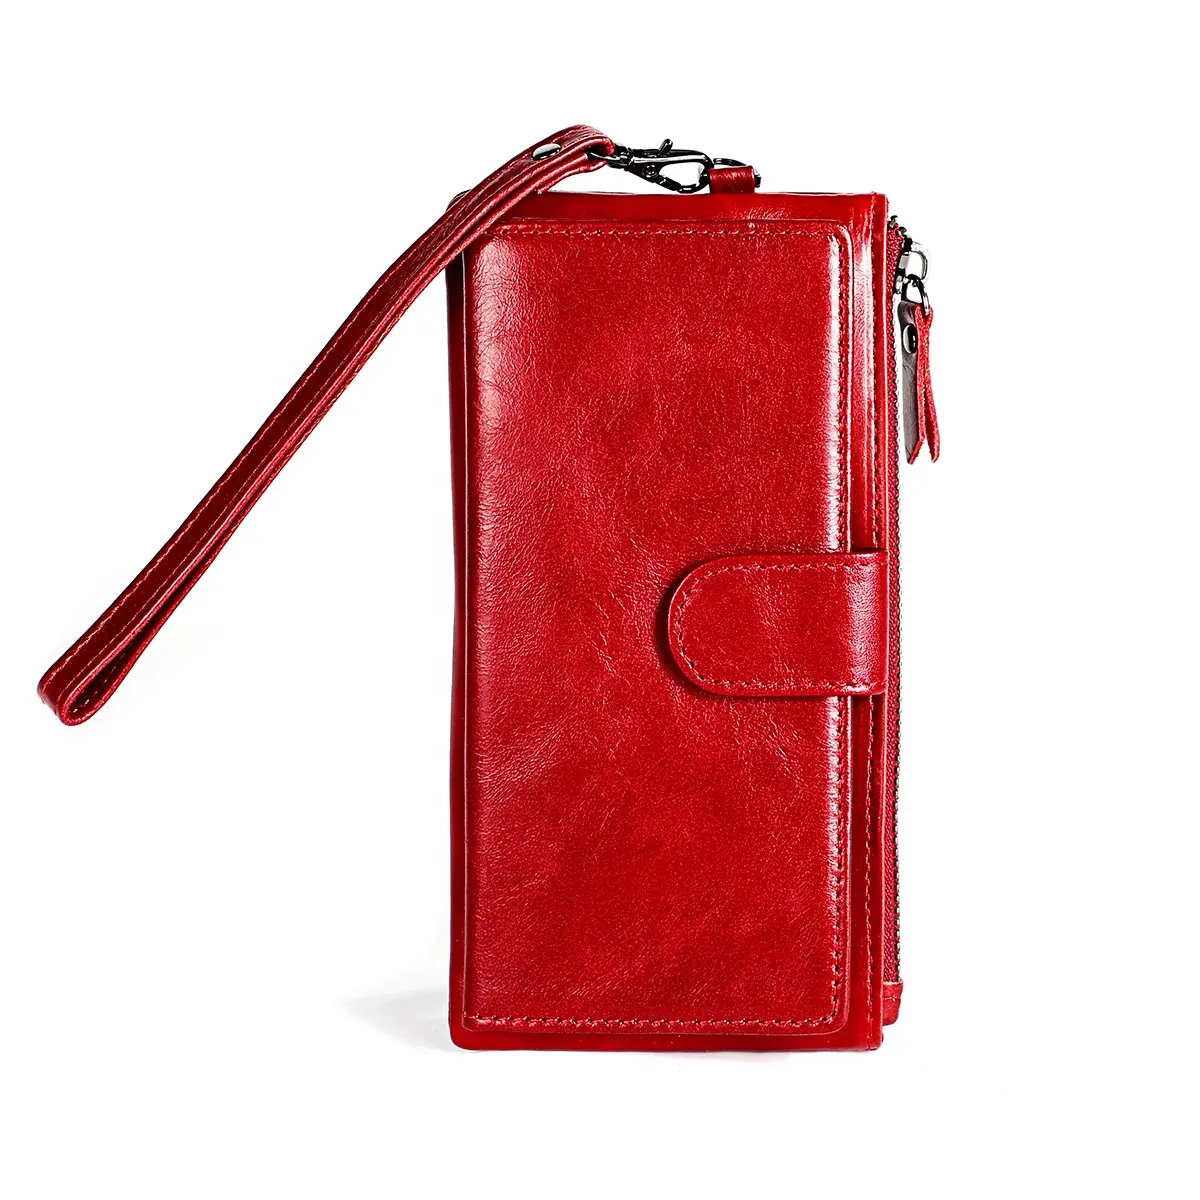 के चमड़े के लंबे जिपर बटुआ पर्स आकस्मिक धारक क्लच बटुआ बहु-कार्ड स्थिति फोन बैग असली गाय का चमड़ा महिलाओं के लिए फैशन